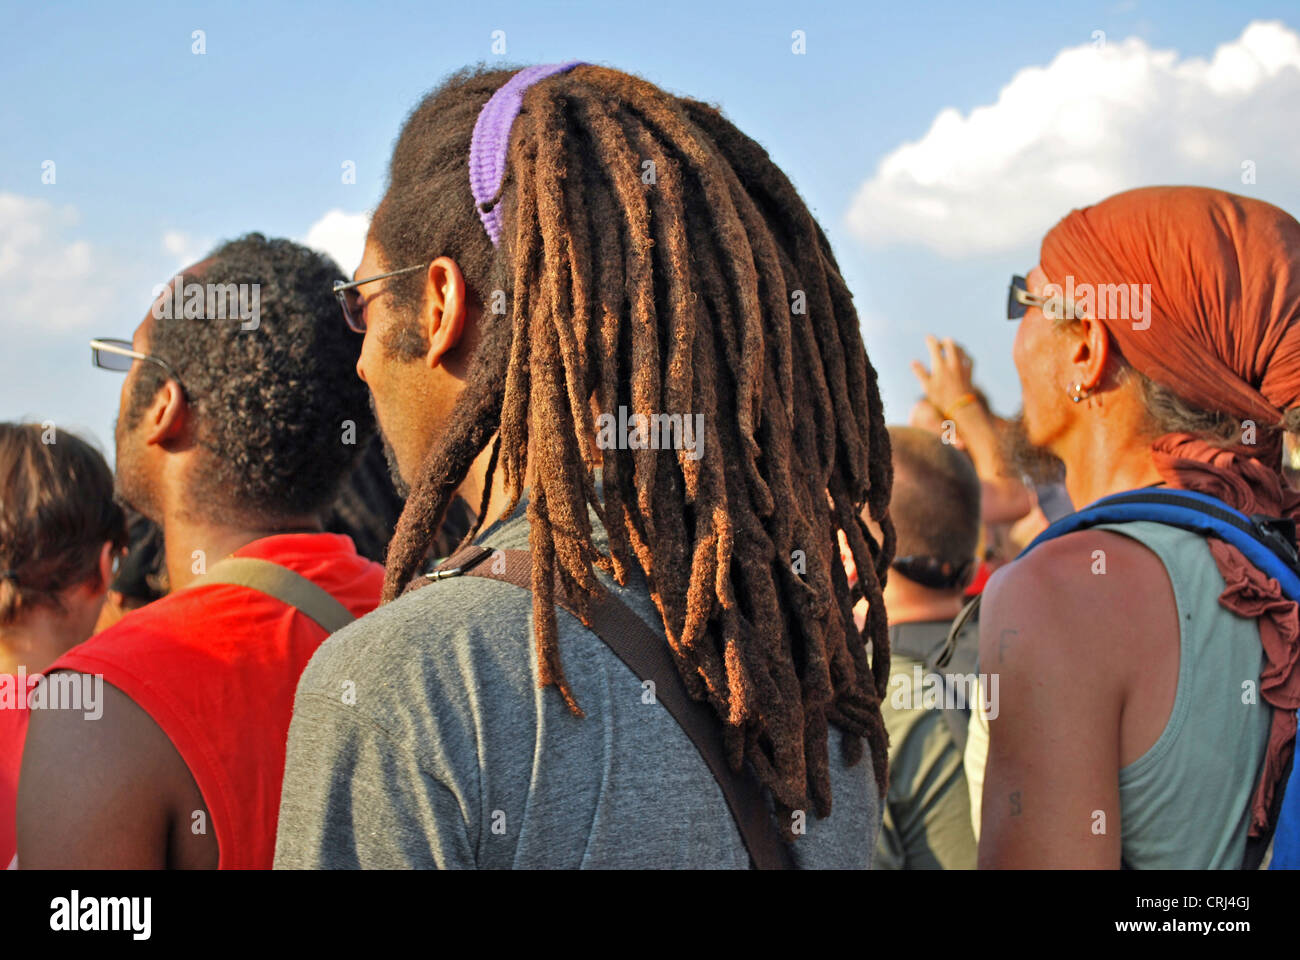 L'homme avec des dreadlocks sur music festival Summerjam 2009, plus grand festival de reggae en Europe, l'Allemagne, en Rhénanie du Nord-Westphalie, Cologne Banque D'Images